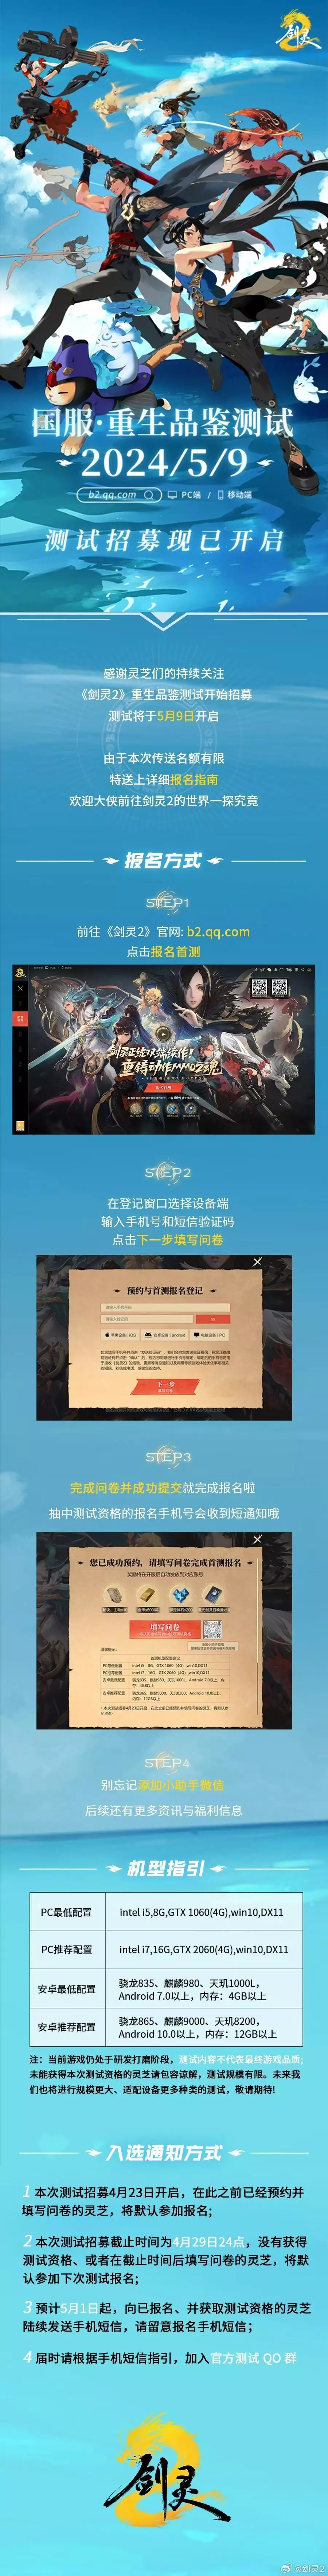 腾讯游戏《剑灵2》新视频国服首测招募开启曾追